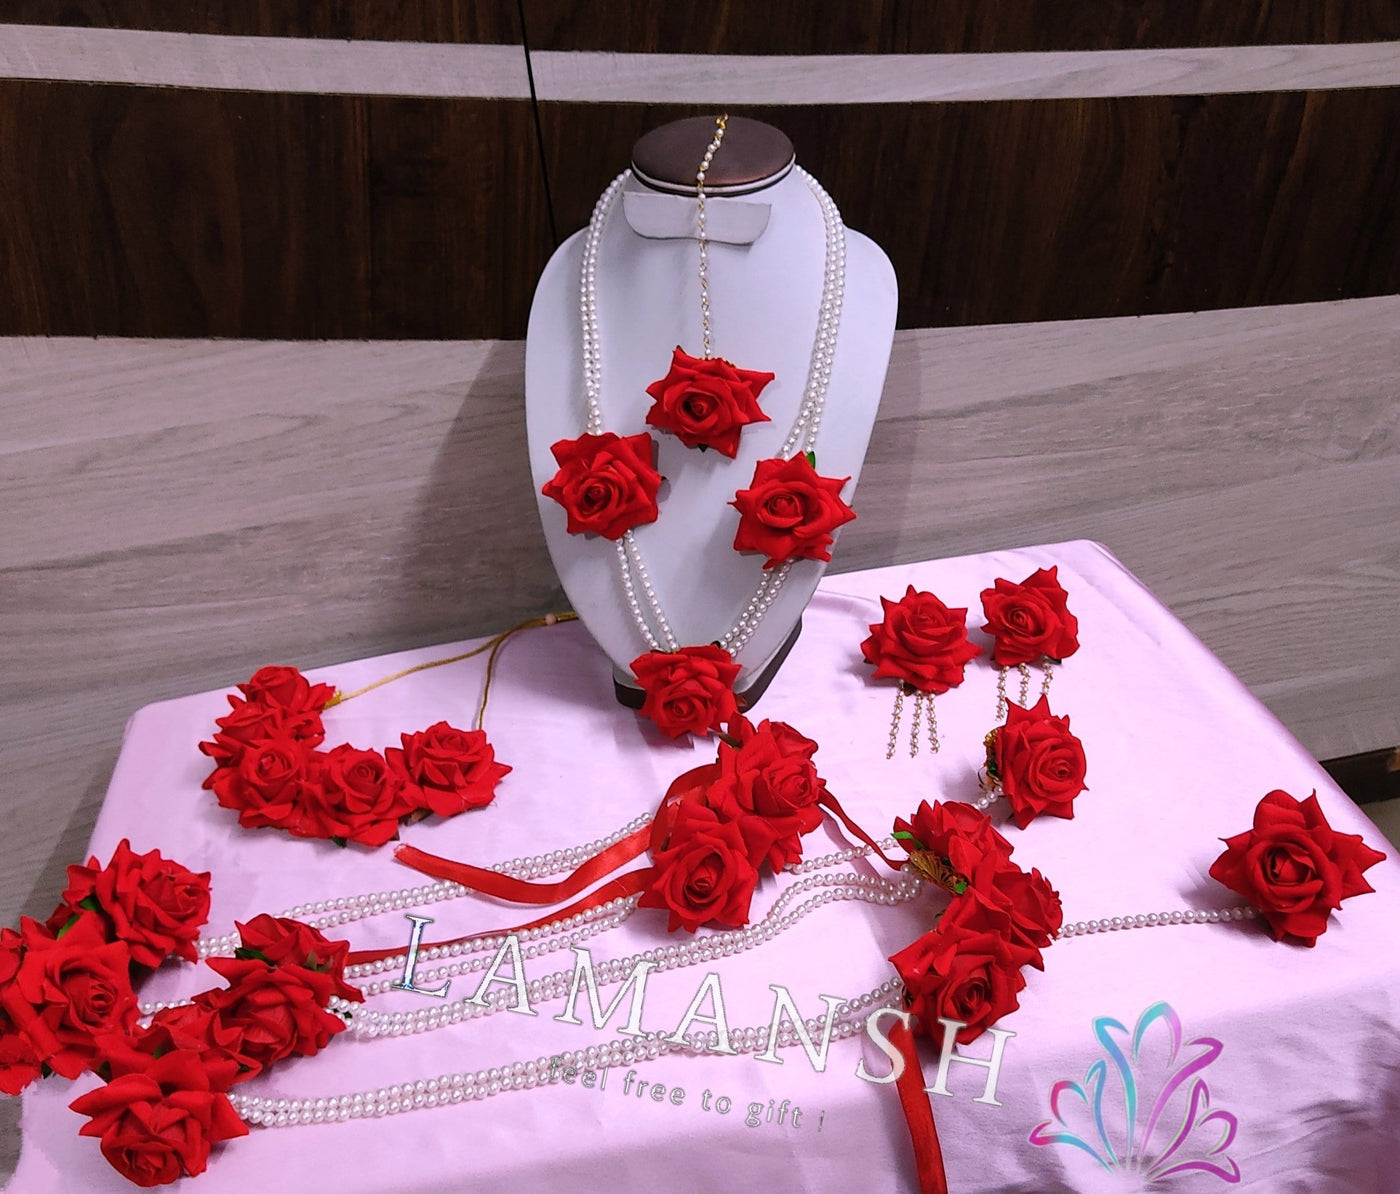 Lamansh Flower 🌺 Jewellery 1 Necklace,1 Choker, 2 Earrings, 1 Maangtika, 2 Ring & 2 Bracelets with Kalire Hangings / Red LAMANSH® Handmade Flower Jewellery Set For Women & Girls / Haldi Set